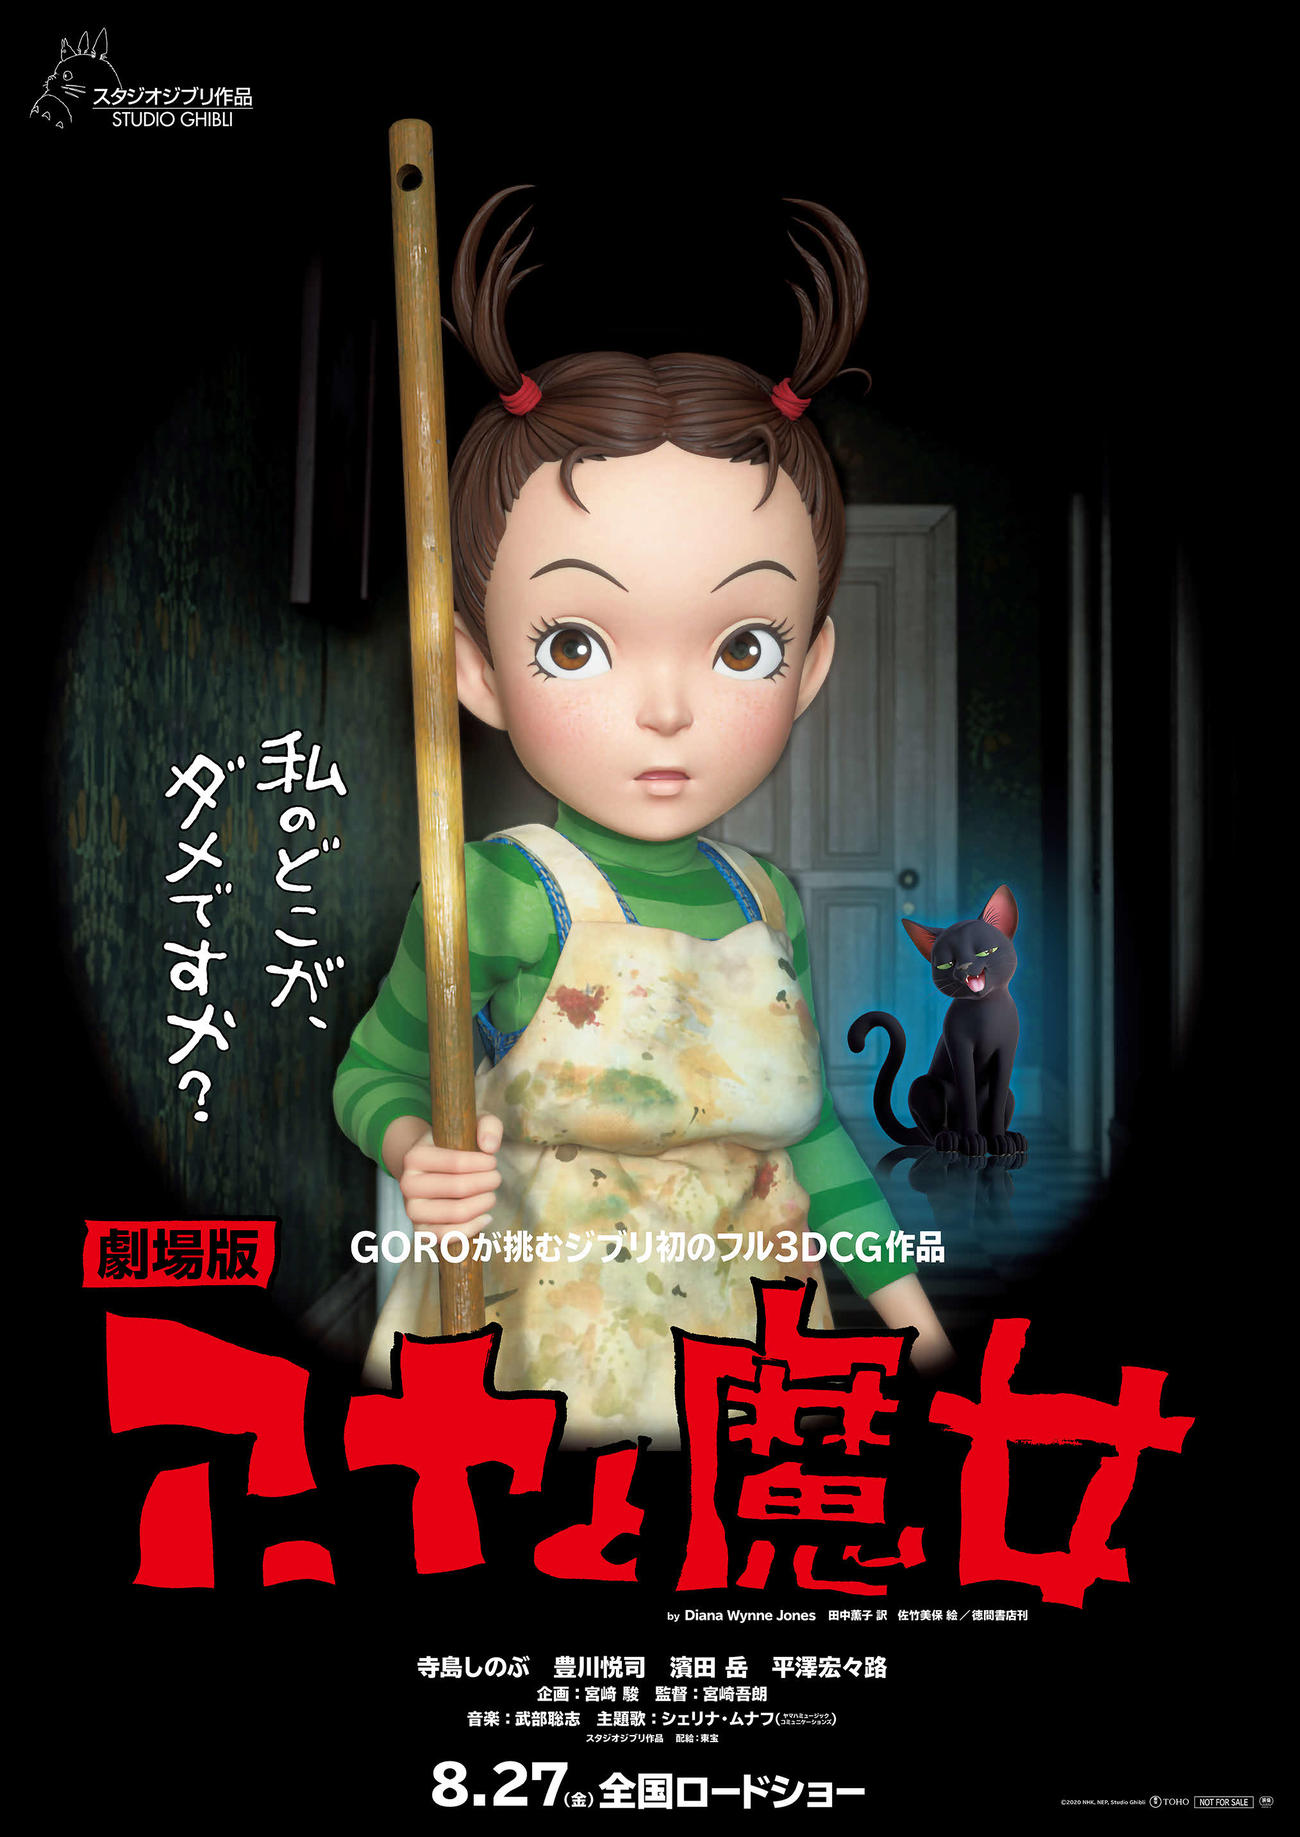 新たな公開日が8月27日に決まったスタジオジブリのアニメ映画「アーヤと魔女」のポスタービジュアル（C）2020 NHK, NEP, Studio Ghibli